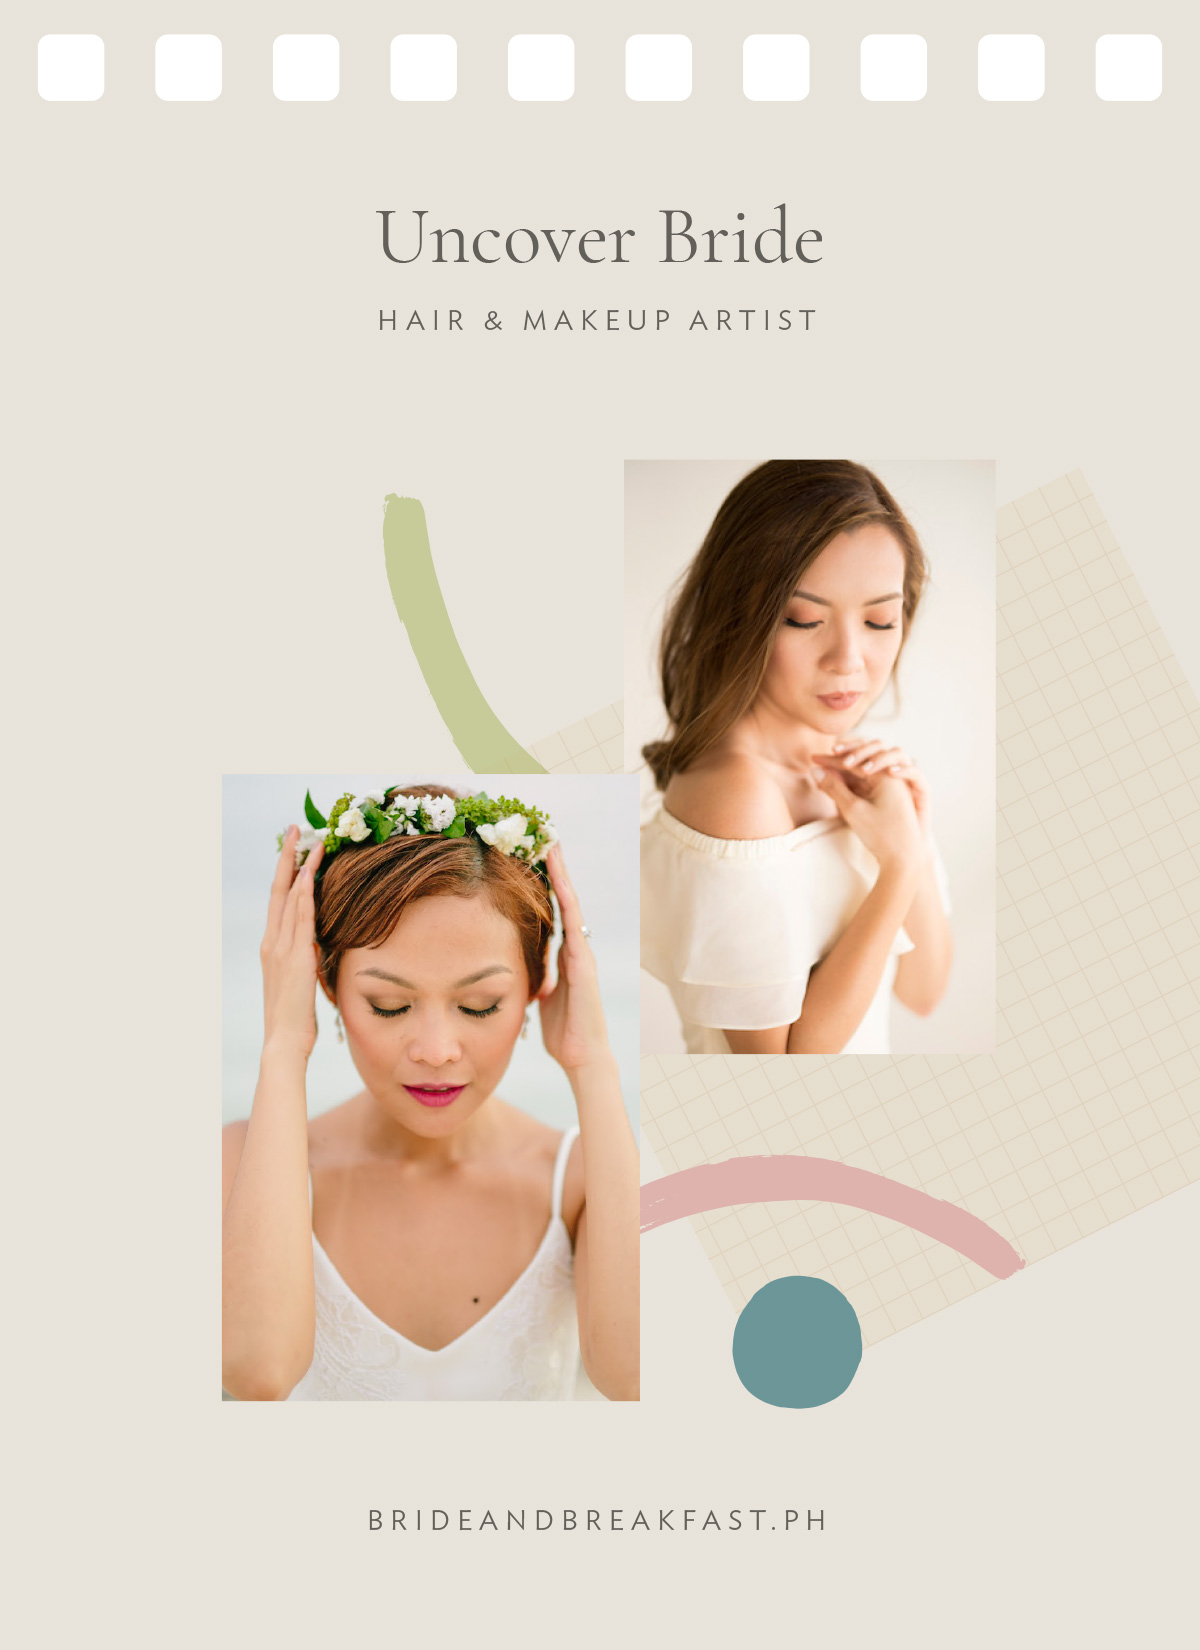 Uncover Bride